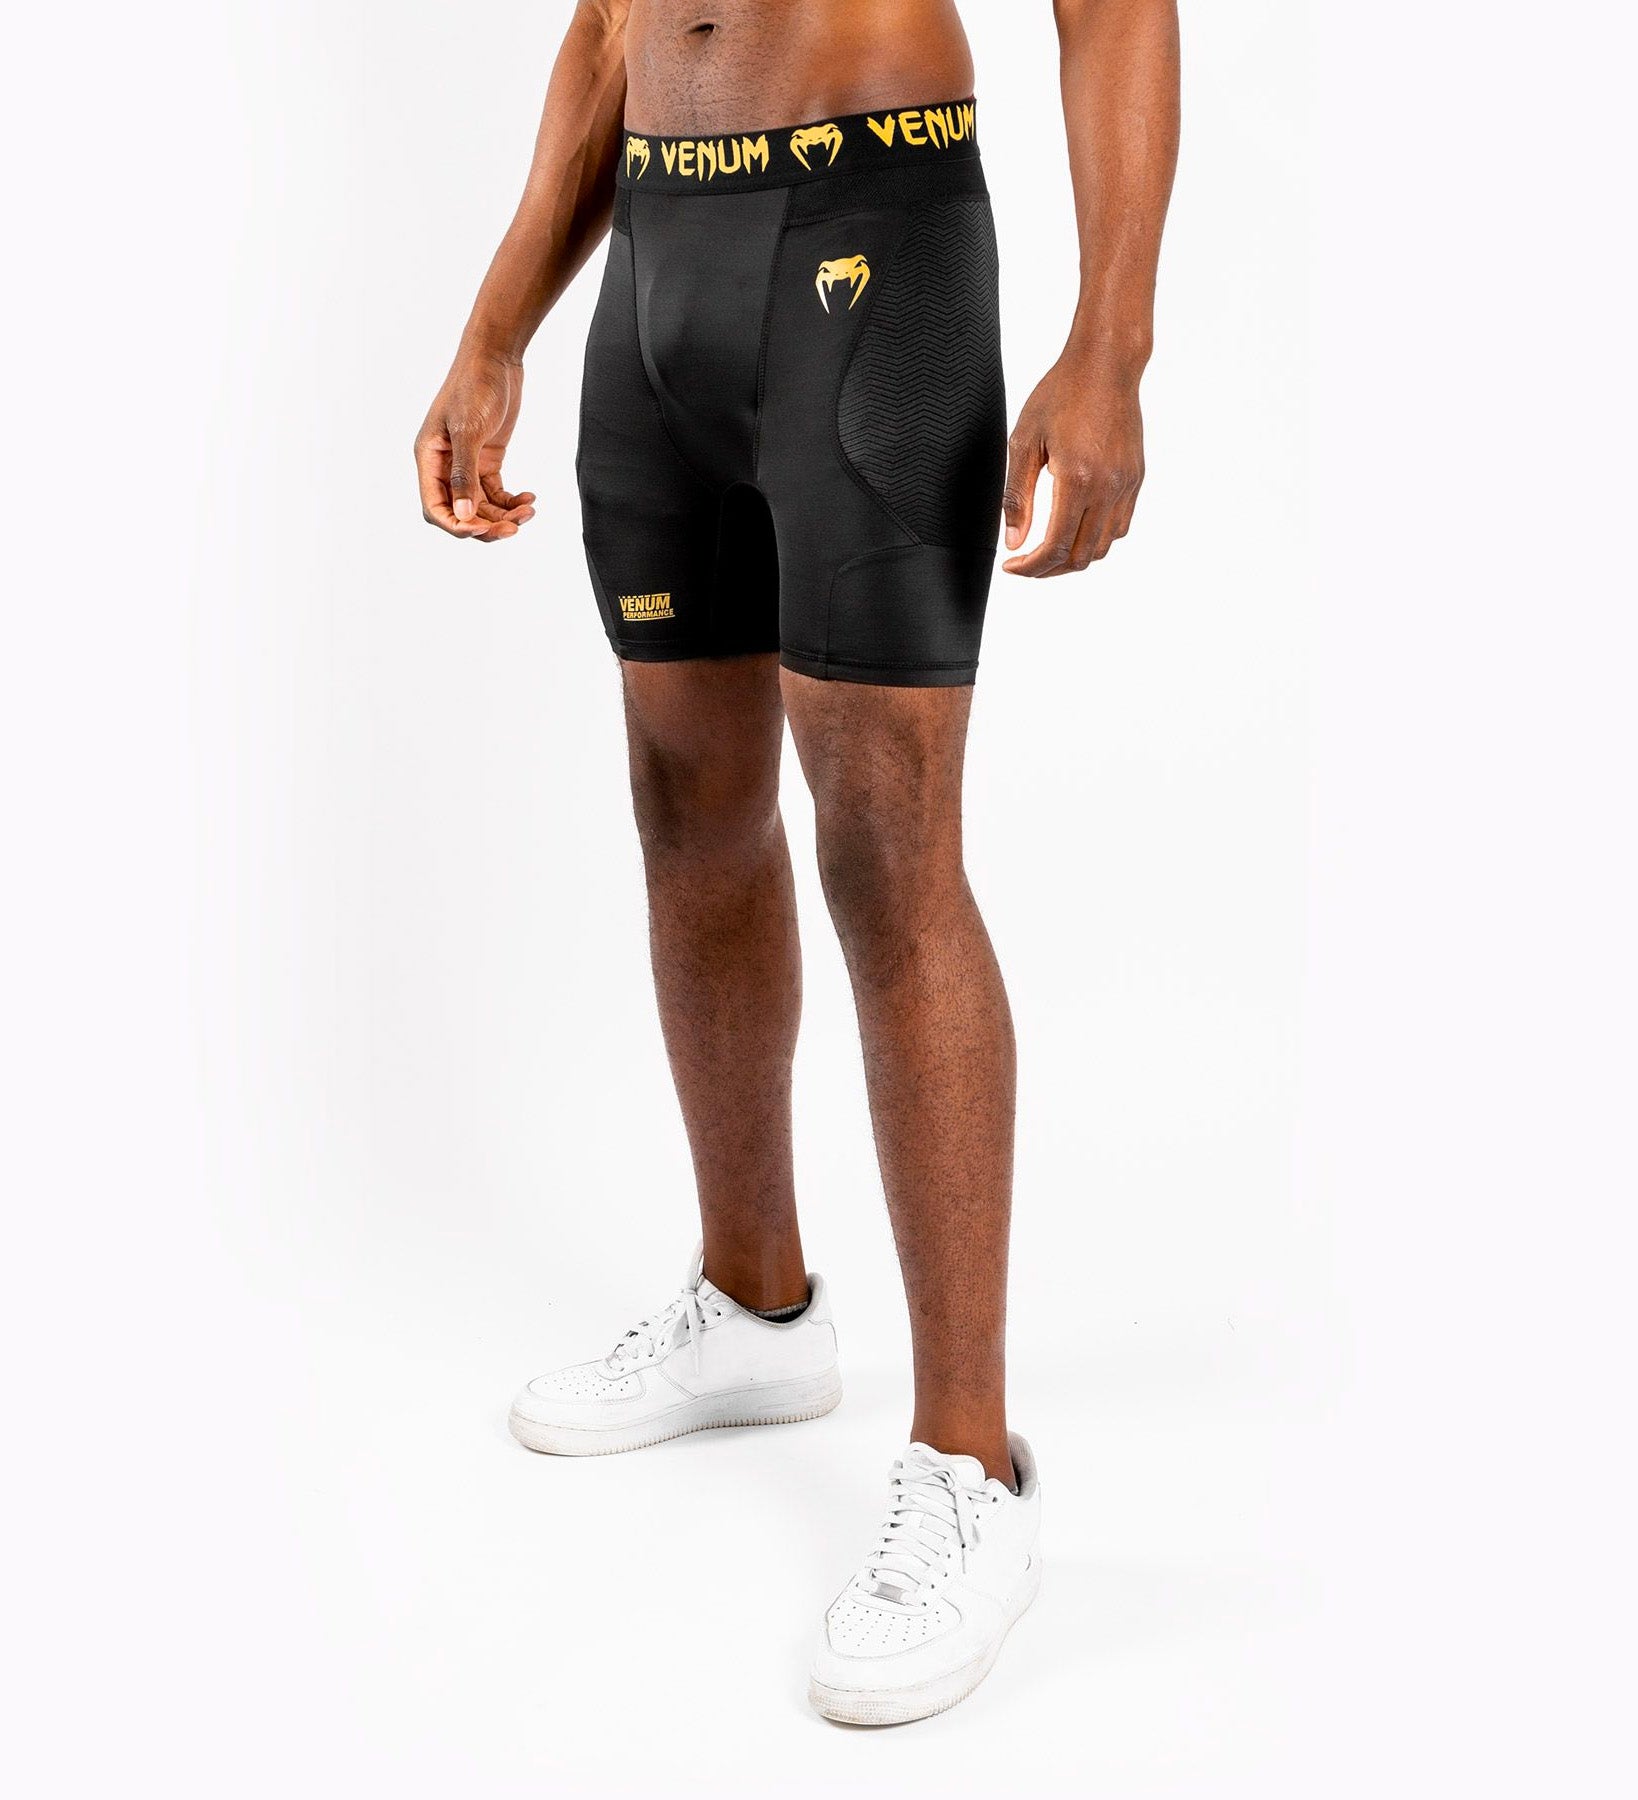 Venum Compressie Shorts G Fit - Zwart/Goud